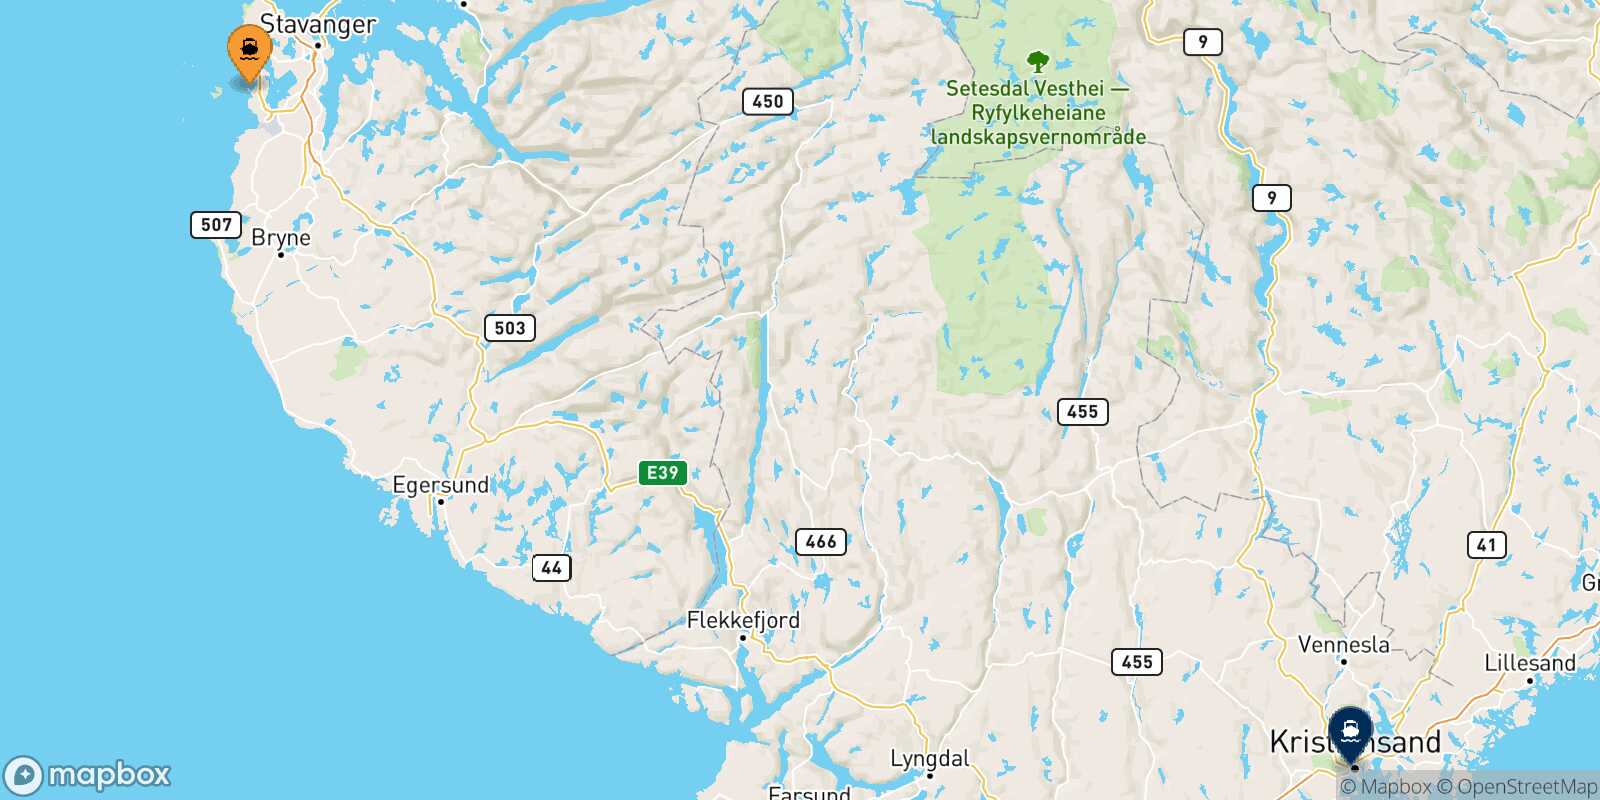 Mappa della rotta Stavanger Kristiansand